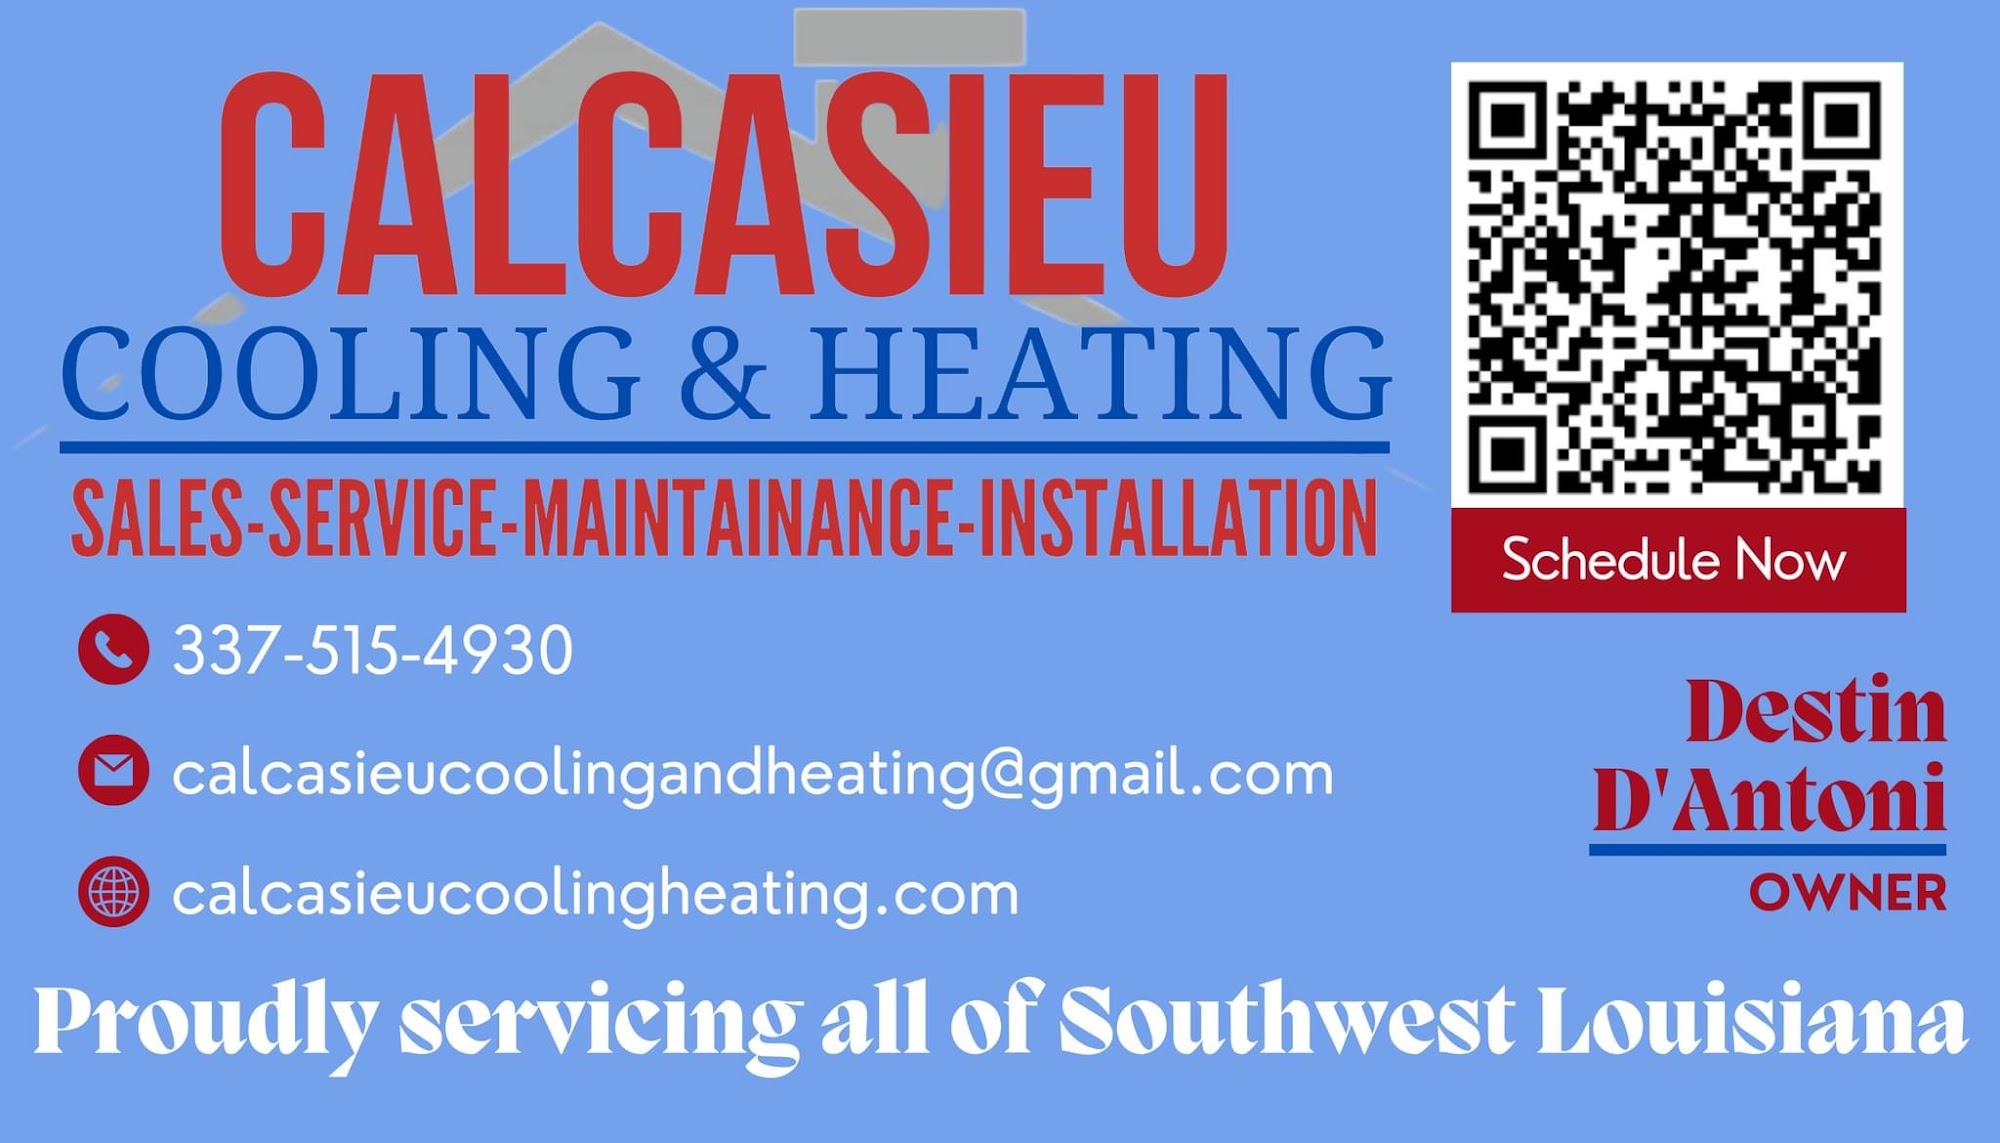 Calcasieu Cooling & Heating